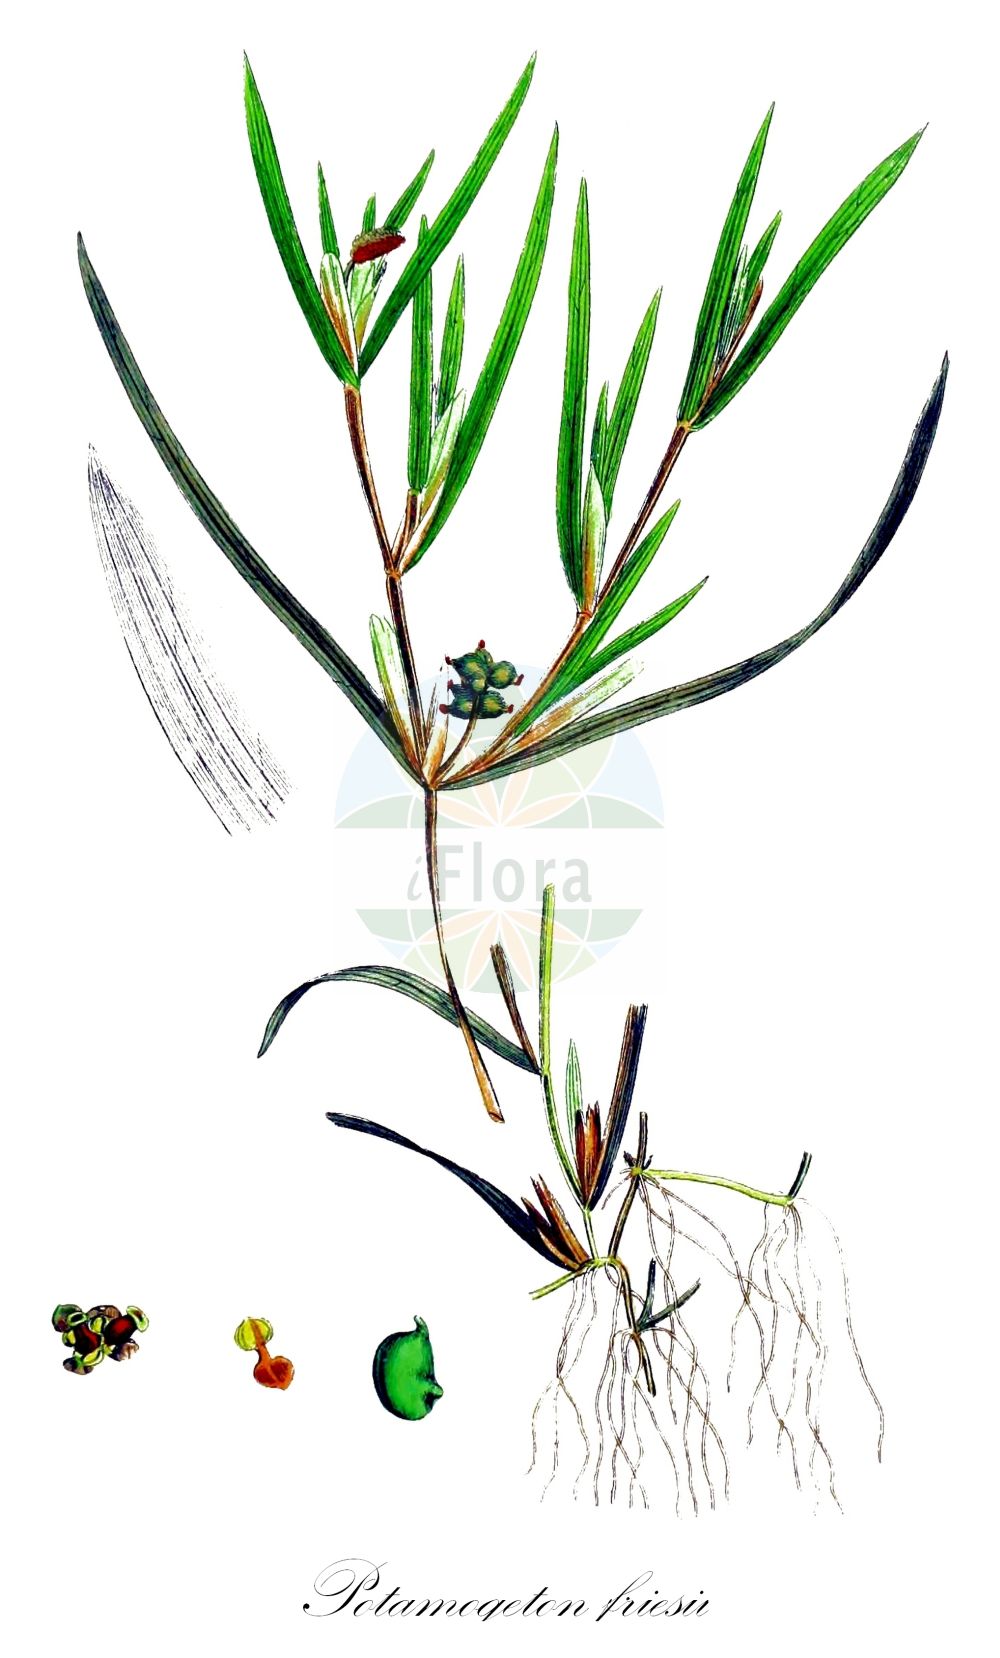 Historische Abbildung von Potamogeton friesii (Stachelspitziges Laichkraut - Flat-stalked Pondweed). Das Bild zeigt Blatt, Bluete, Frucht und Same. ---- Historical Drawing of Potamogeton friesii (Stachelspitziges Laichkraut - Flat-stalked Pondweed). The image is showing leaf, flower, fruit and seed.(Potamogeton friesii,Stachelspitziges Laichkraut,Flat-stalked Pondweed,Potamogeton friesii,Potamogeton mucronatus,Stachelspitziges Laichkraut,Roetliches Laichkraut,Flat-stalked Pondweed,Fries Pondweed,Sharp-leaved Pondweed,Potamogeton,Laichkraut,Pondweed,Potamogetonaceae,Laichkrautgewächse,Pondweed family,Blatt,Bluete,Frucht,Same,leaf,flower,fruit,seed,Sowerby (1790-1813))